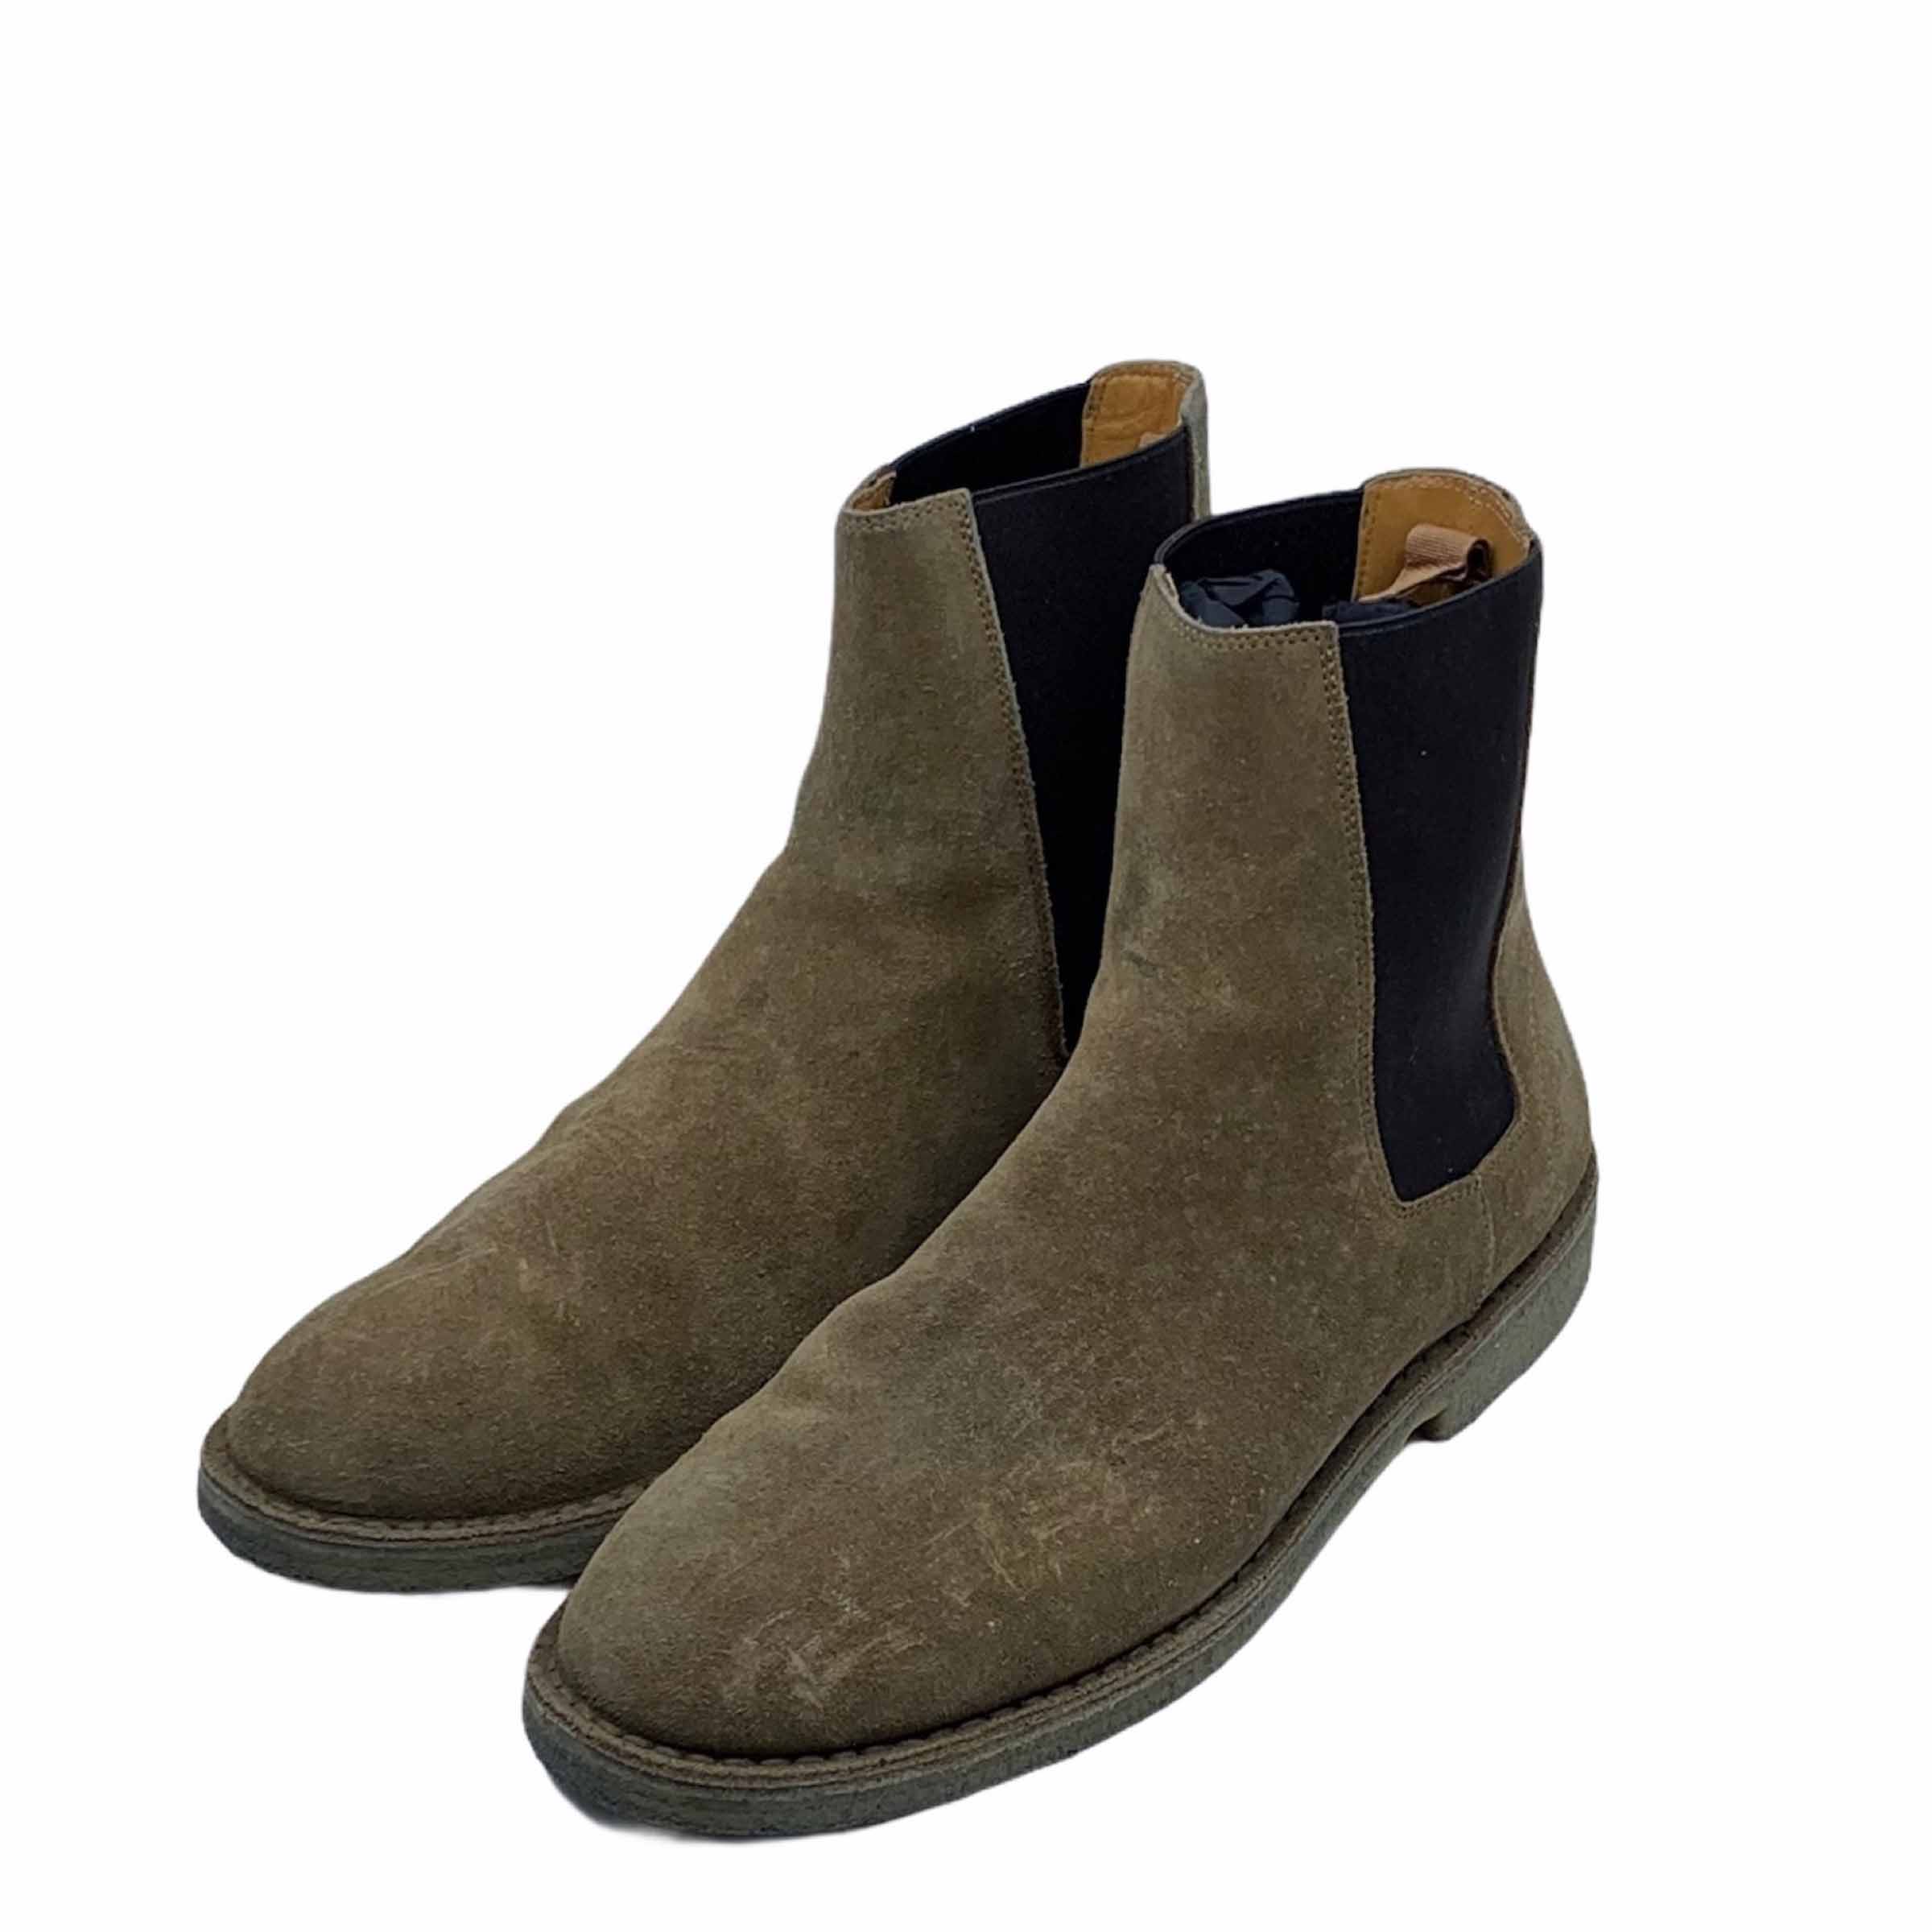 [Saint Laurent] Nevada Suede Chelsea Boots - Size EUR41